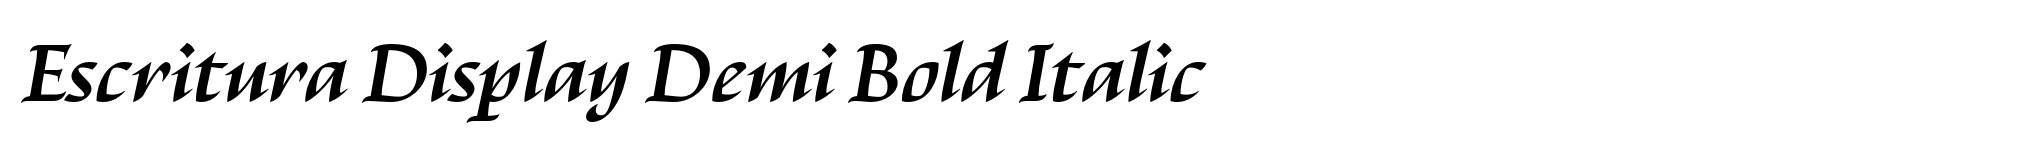 Escritura Display Demi Bold Italic image